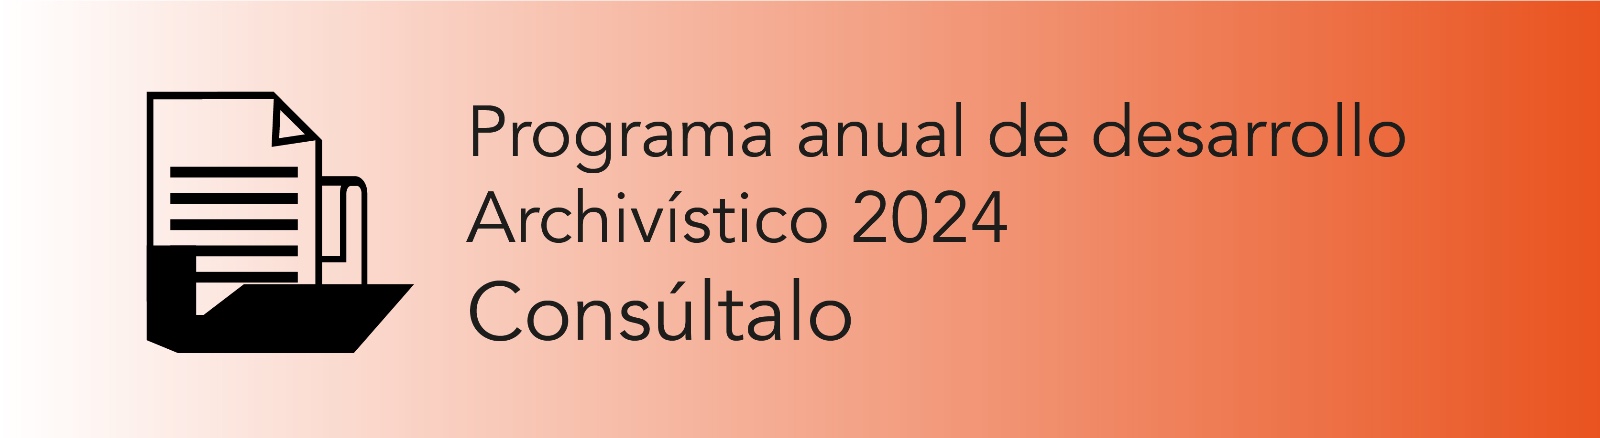 Imagen que permite conocer el Programa Anual de Desarrollo Archivístico 2024